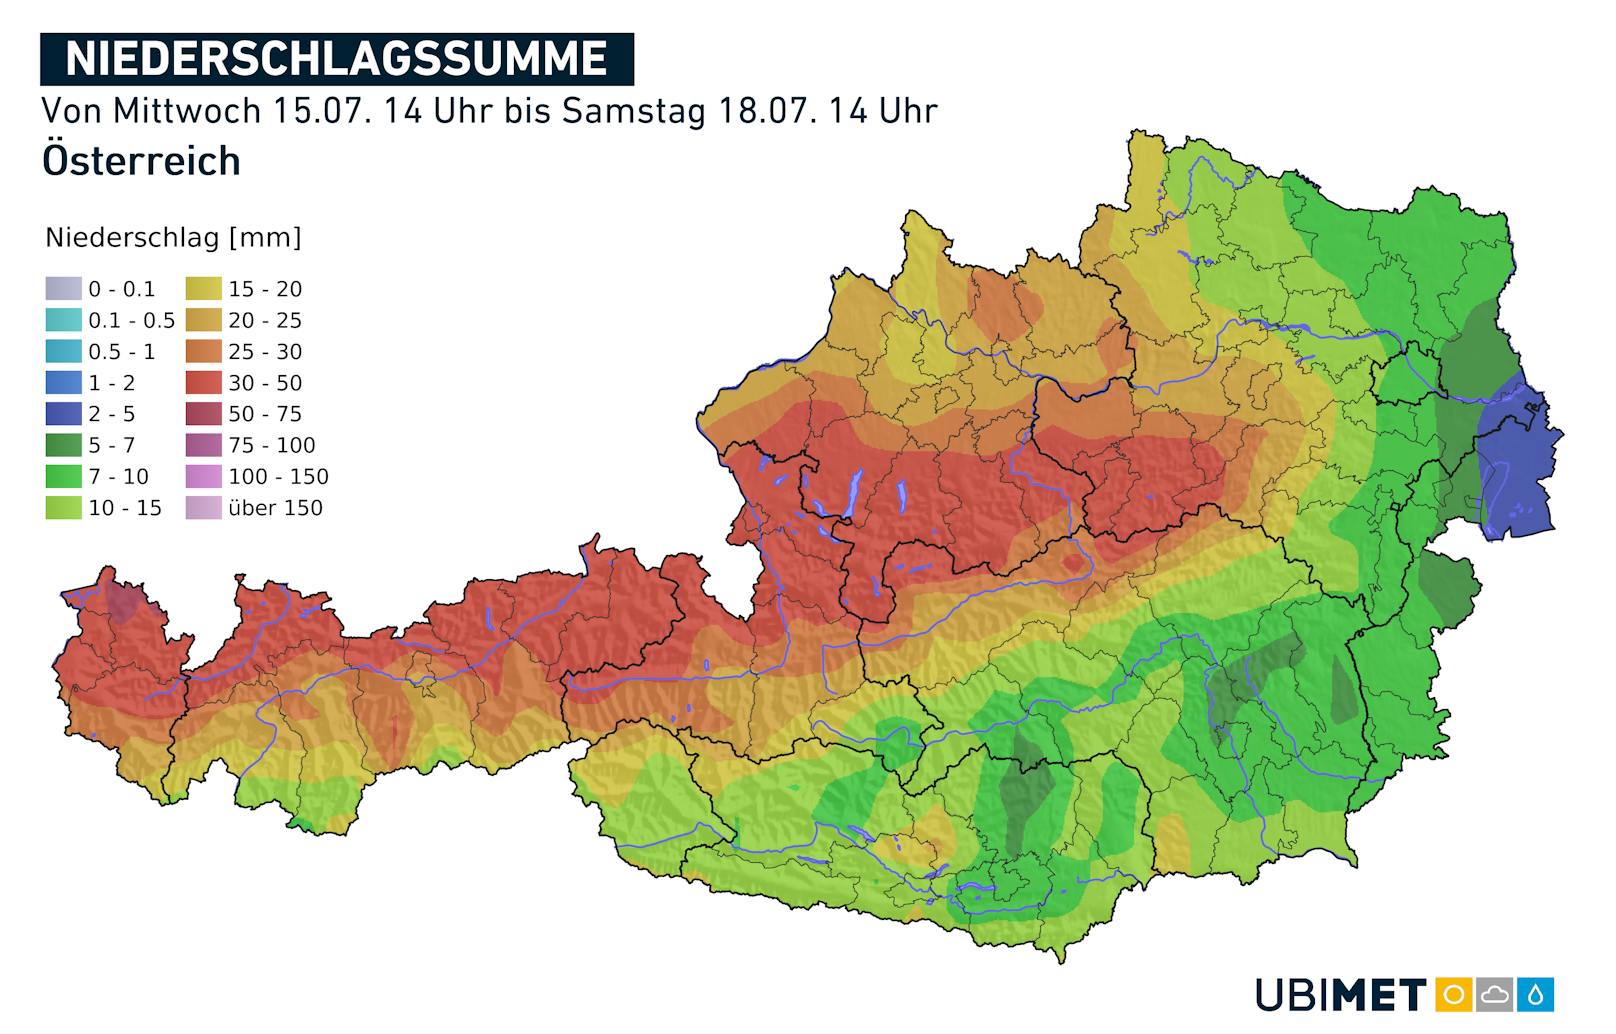 Kaltfront und Höhentief sorgen für eine unbeständige Wetterphase in Österreich. Teils regnet es gewaltige Mengen.